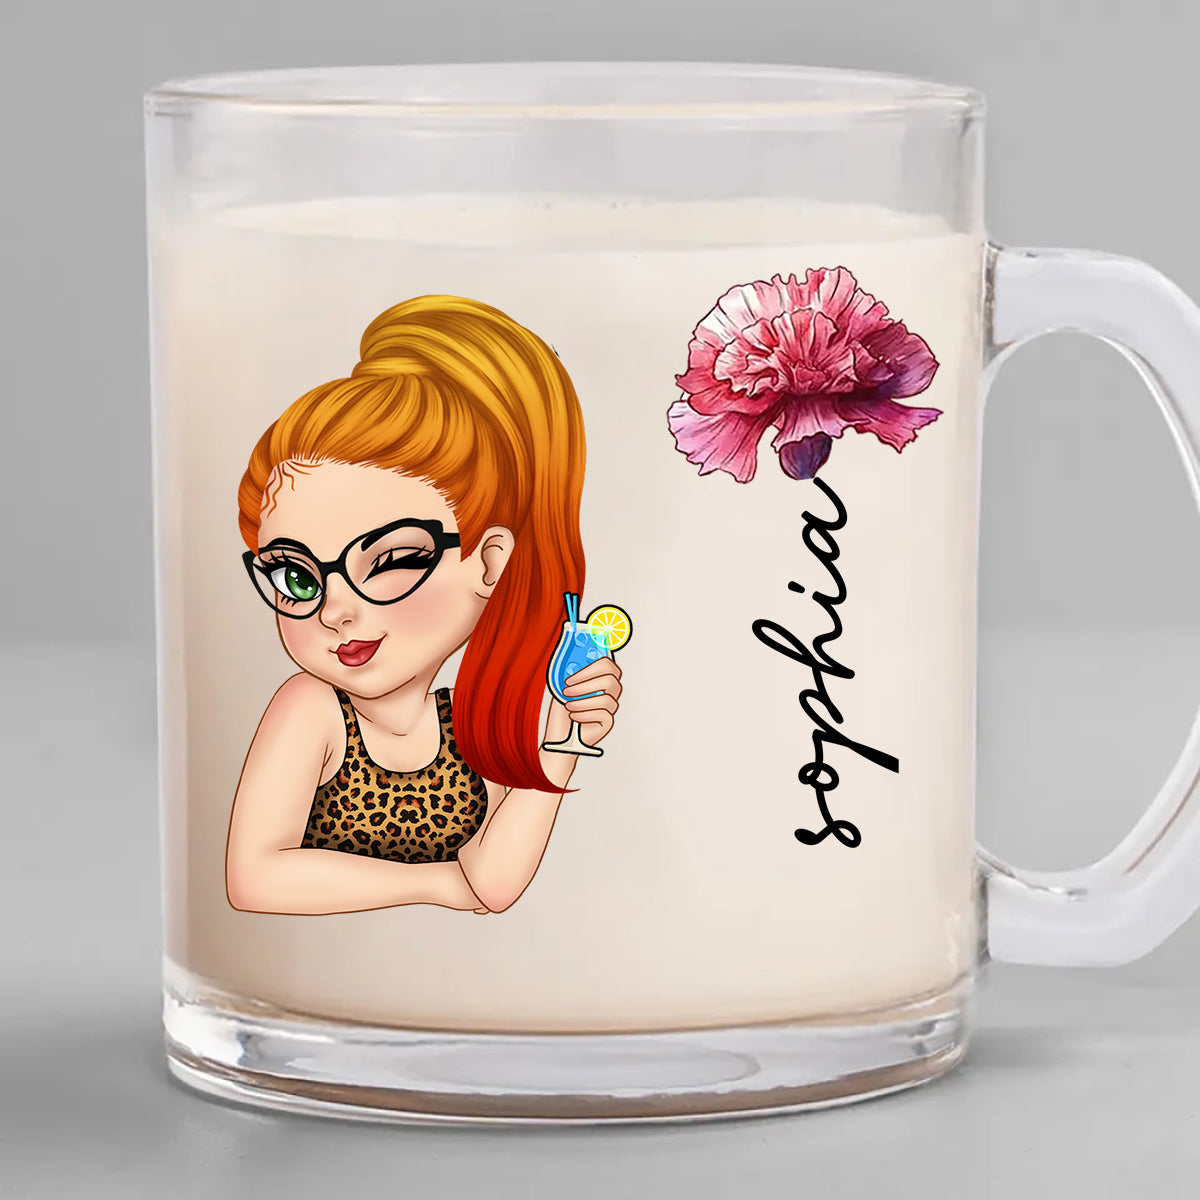 Personalized Birth Month Glass Mug